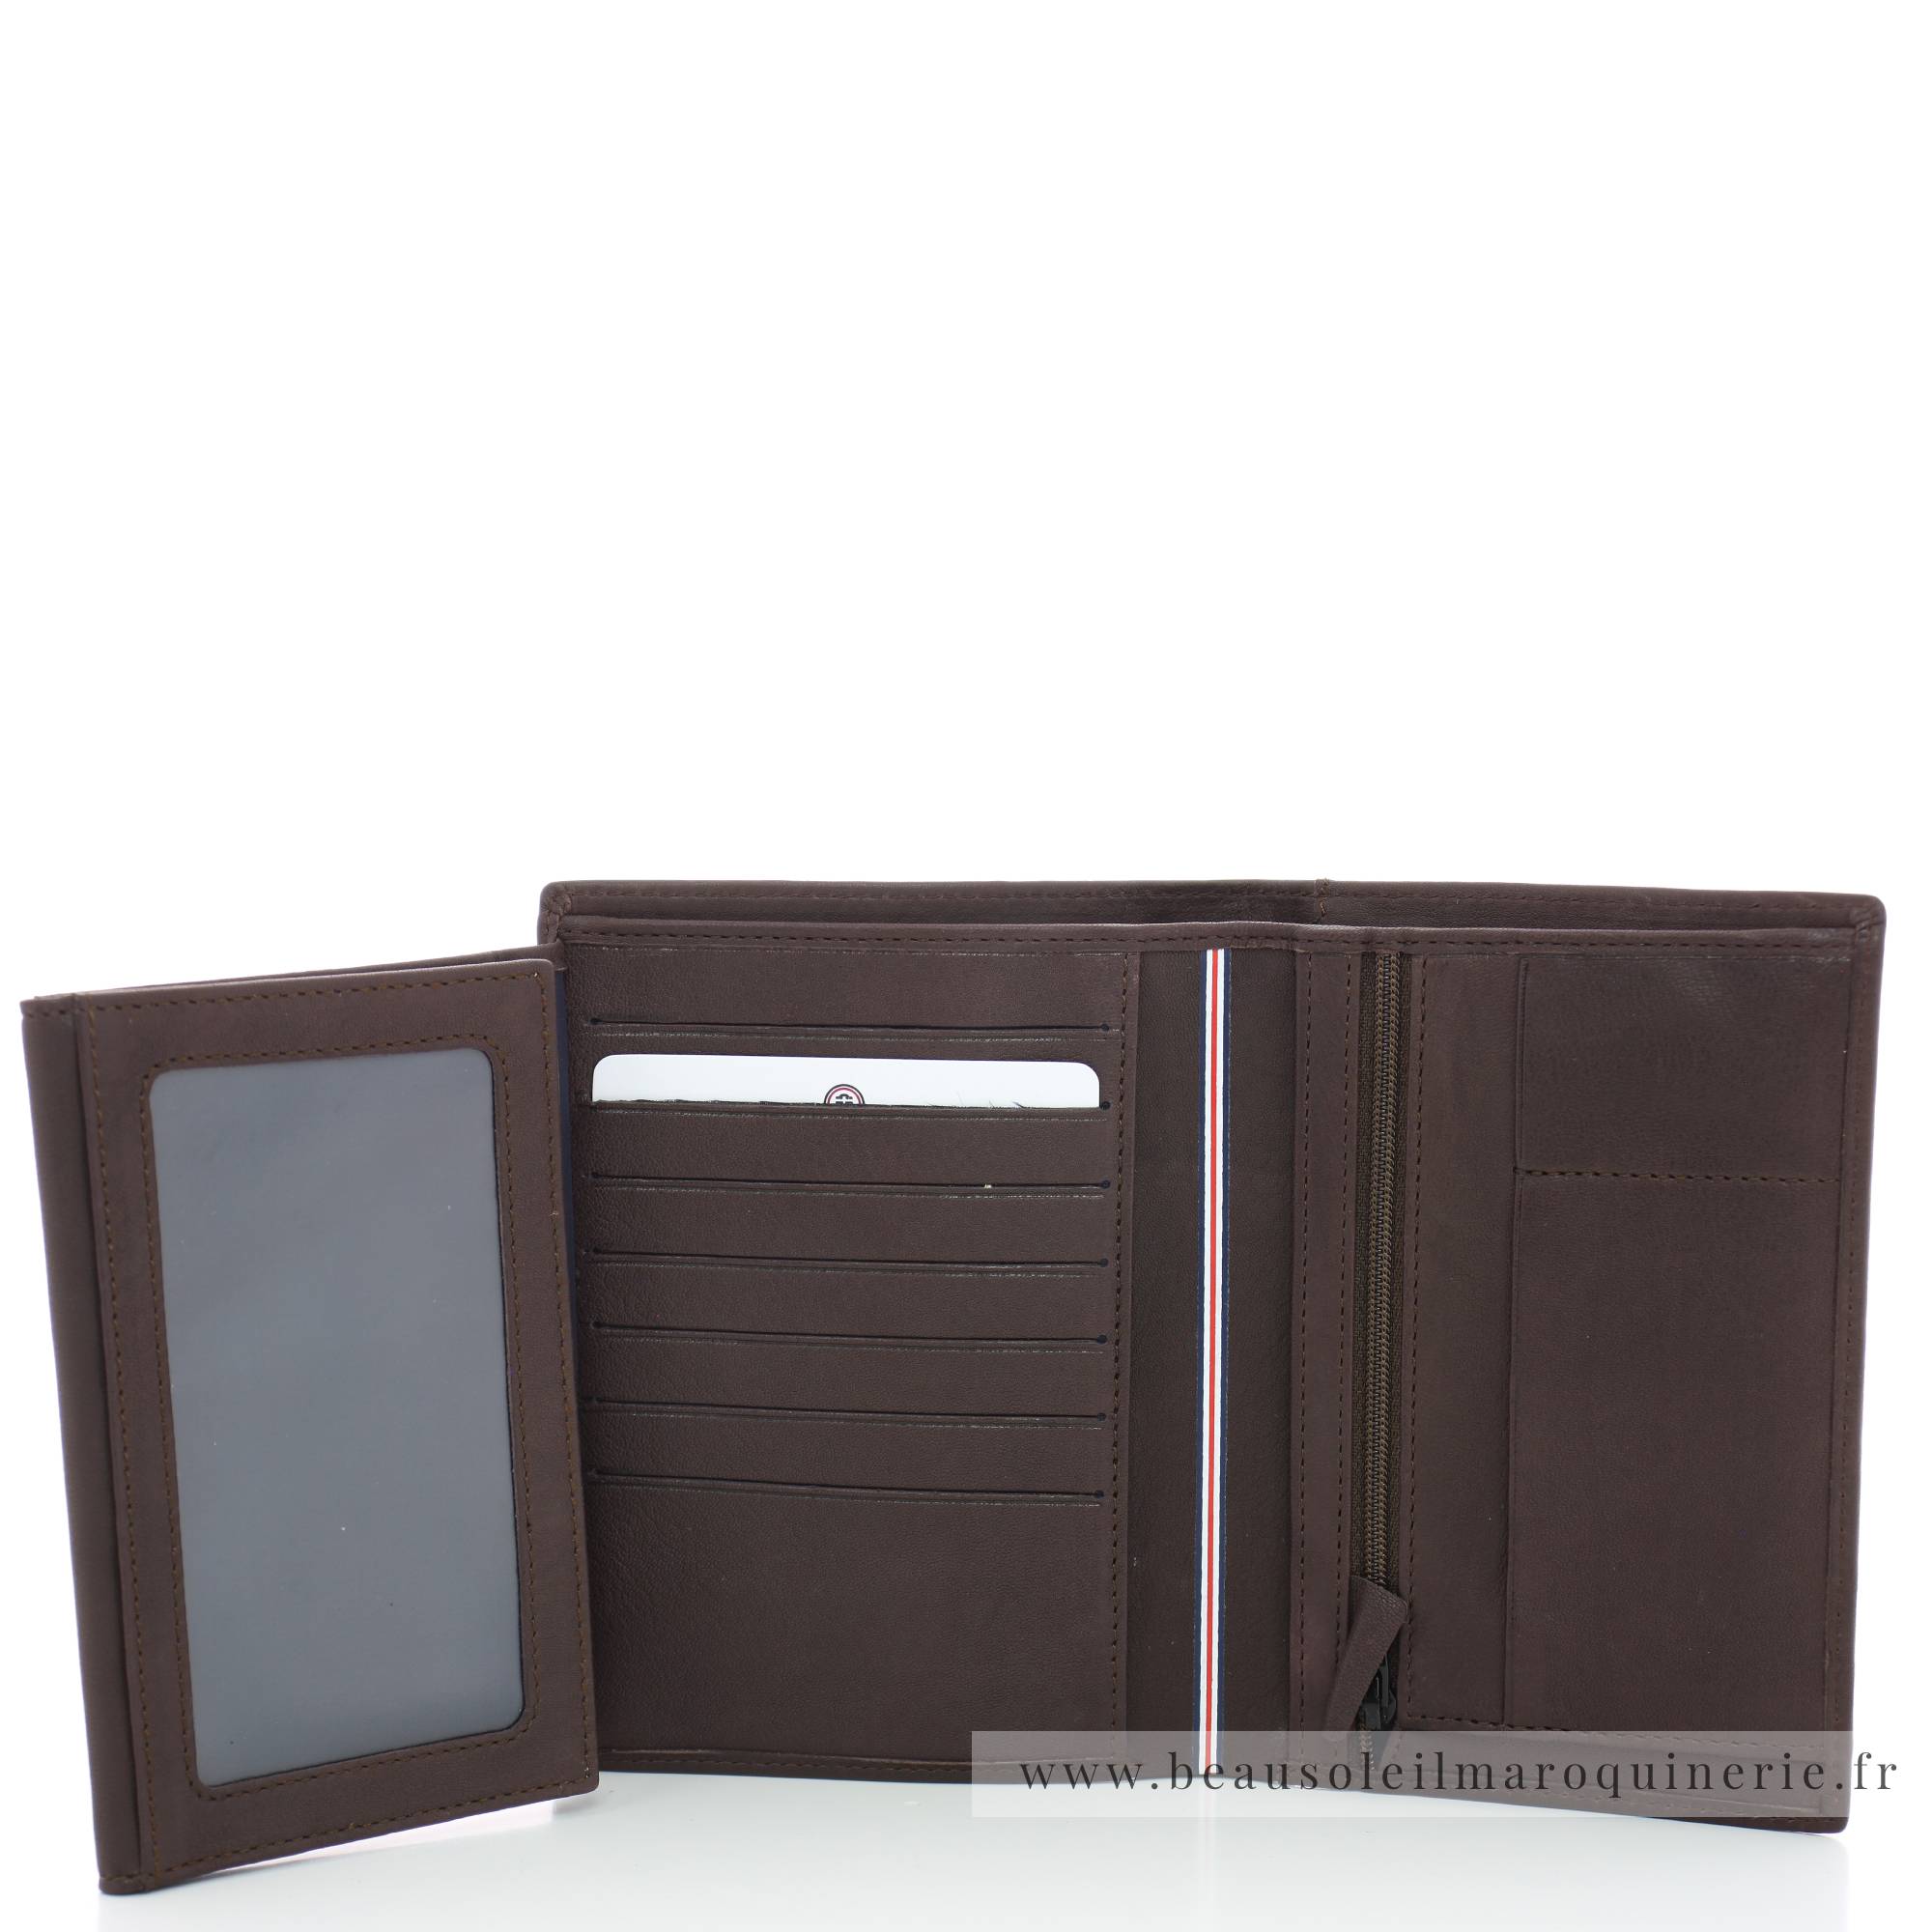 Portefeuille porte-cartes Serge Blanco en cuir ligne Anchorage, référence ANC21013 180 chocolat intérieur